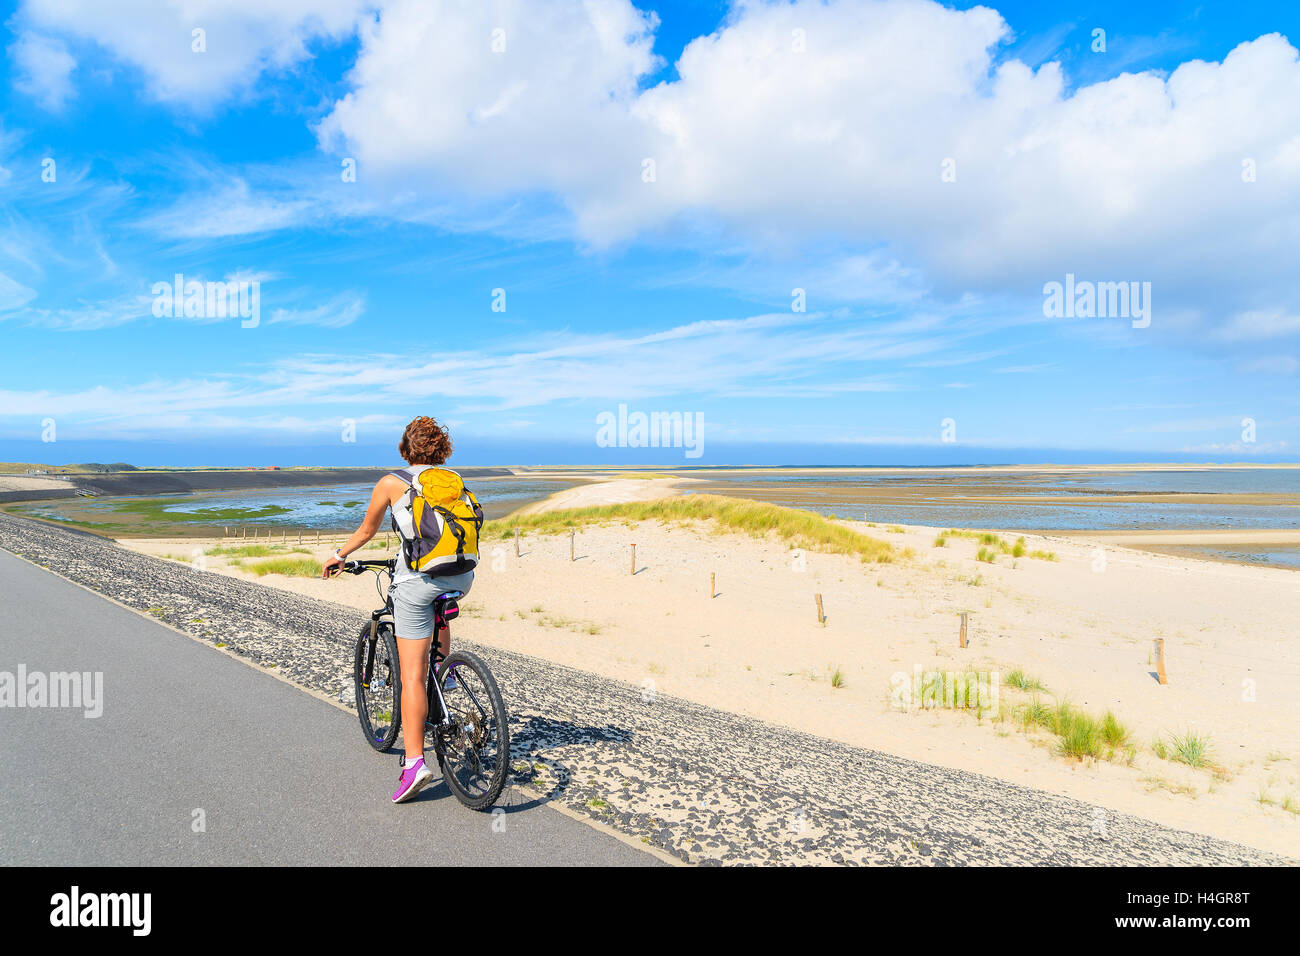 Insel SYLT, Deutschland - SEP 6, 2016: junge Frau auf Fahrrad während der Fahrt entlang der Küste von Sylt Insel in der Nähe von Liste Dorf, Deutschland. Stockfoto